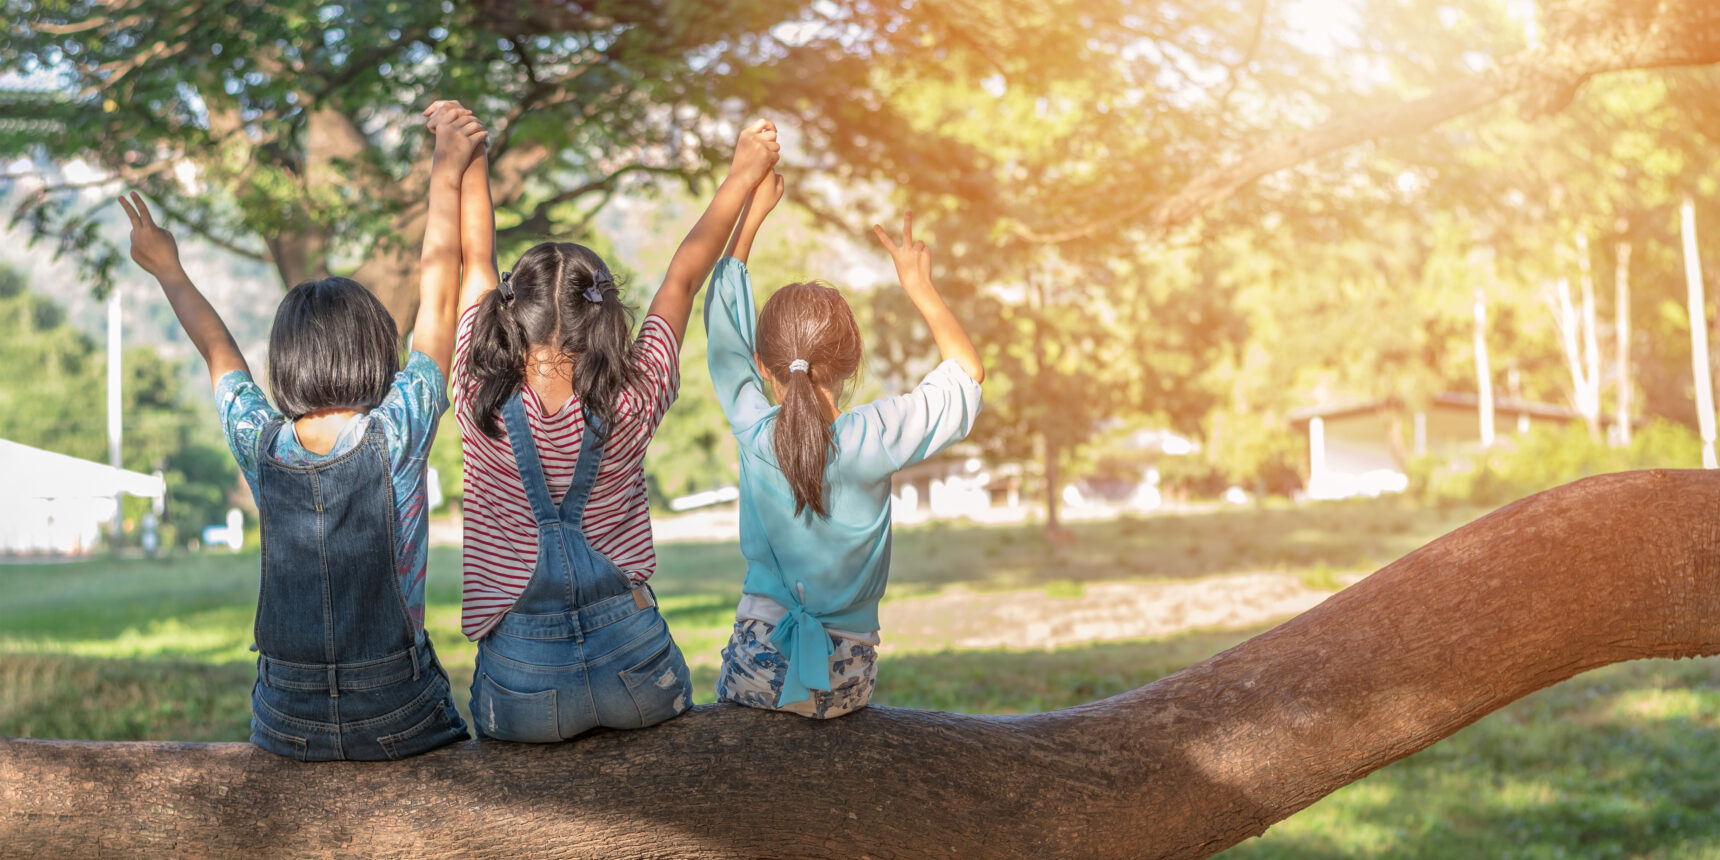 Kuvassa kolme lasta istuu selkä kameraan päin puunrungon päällä kädet ilmassa toisten käsistään pitäen.